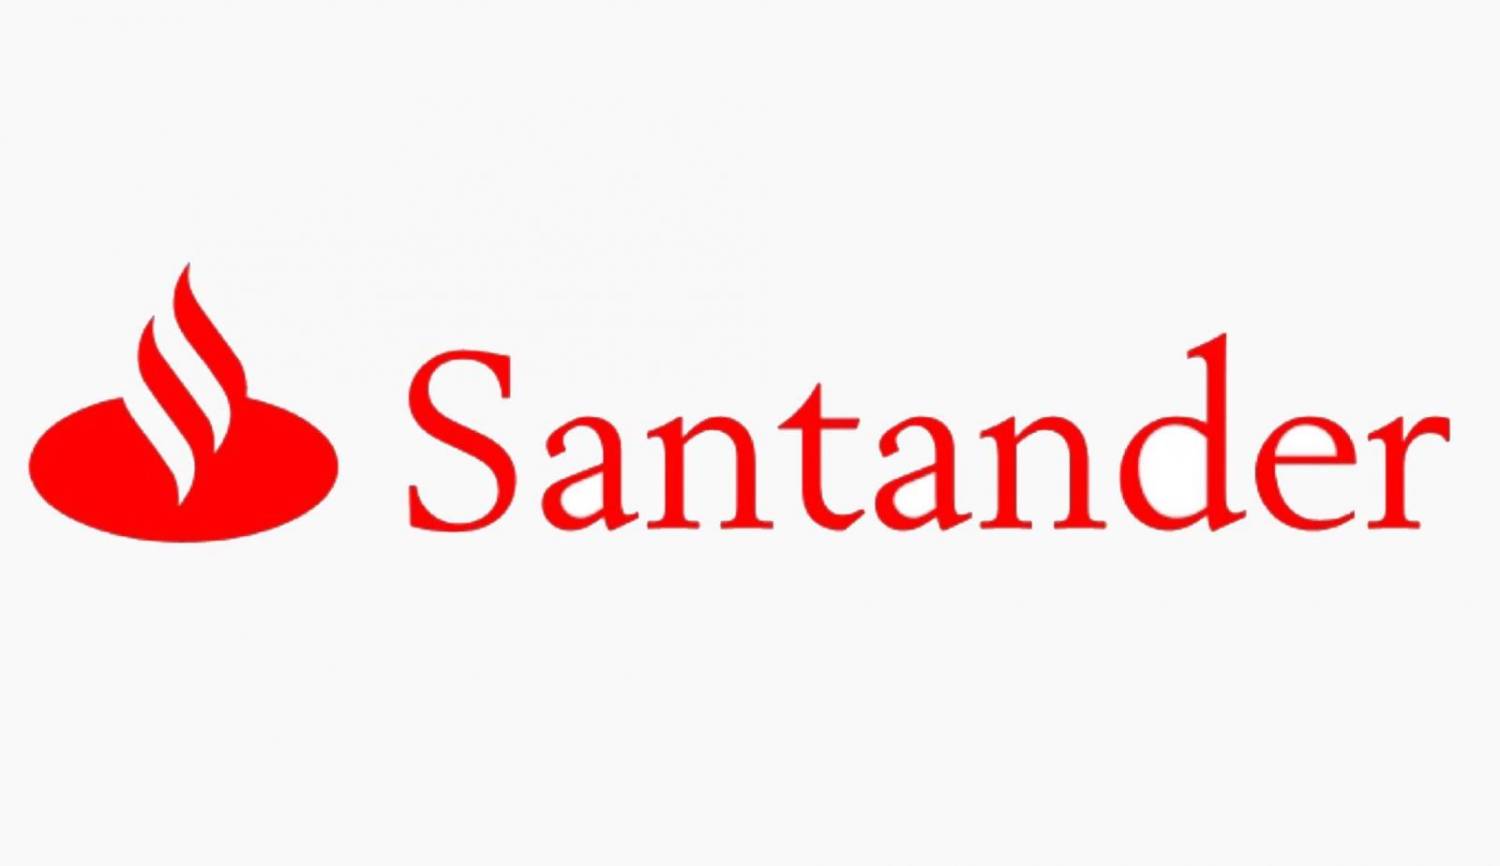 Santander busca judiciário para romper planos de previdência privada